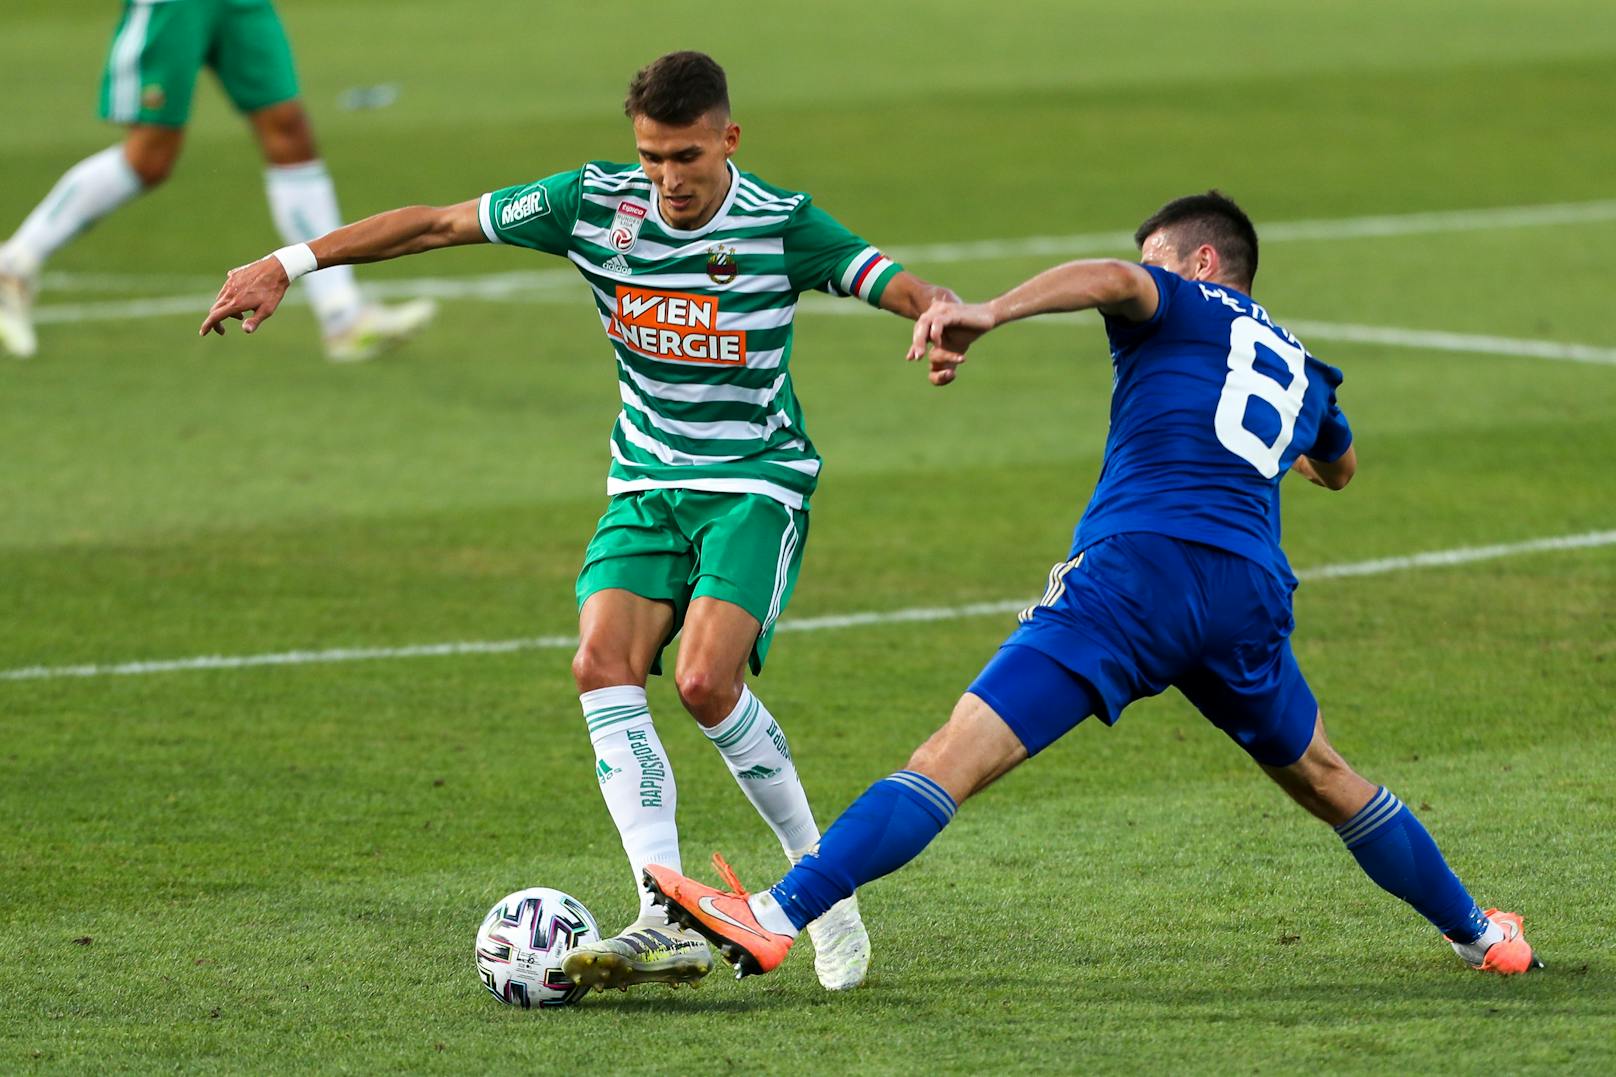 Im letzten Test gegen Slovan Liberec (3:0) kristallisierte sich der neue Kapitän heraus. Der 22-jährige Dejan Ljubicic wird die Grün-Weißen in dieser Saison auf das Feld führen.